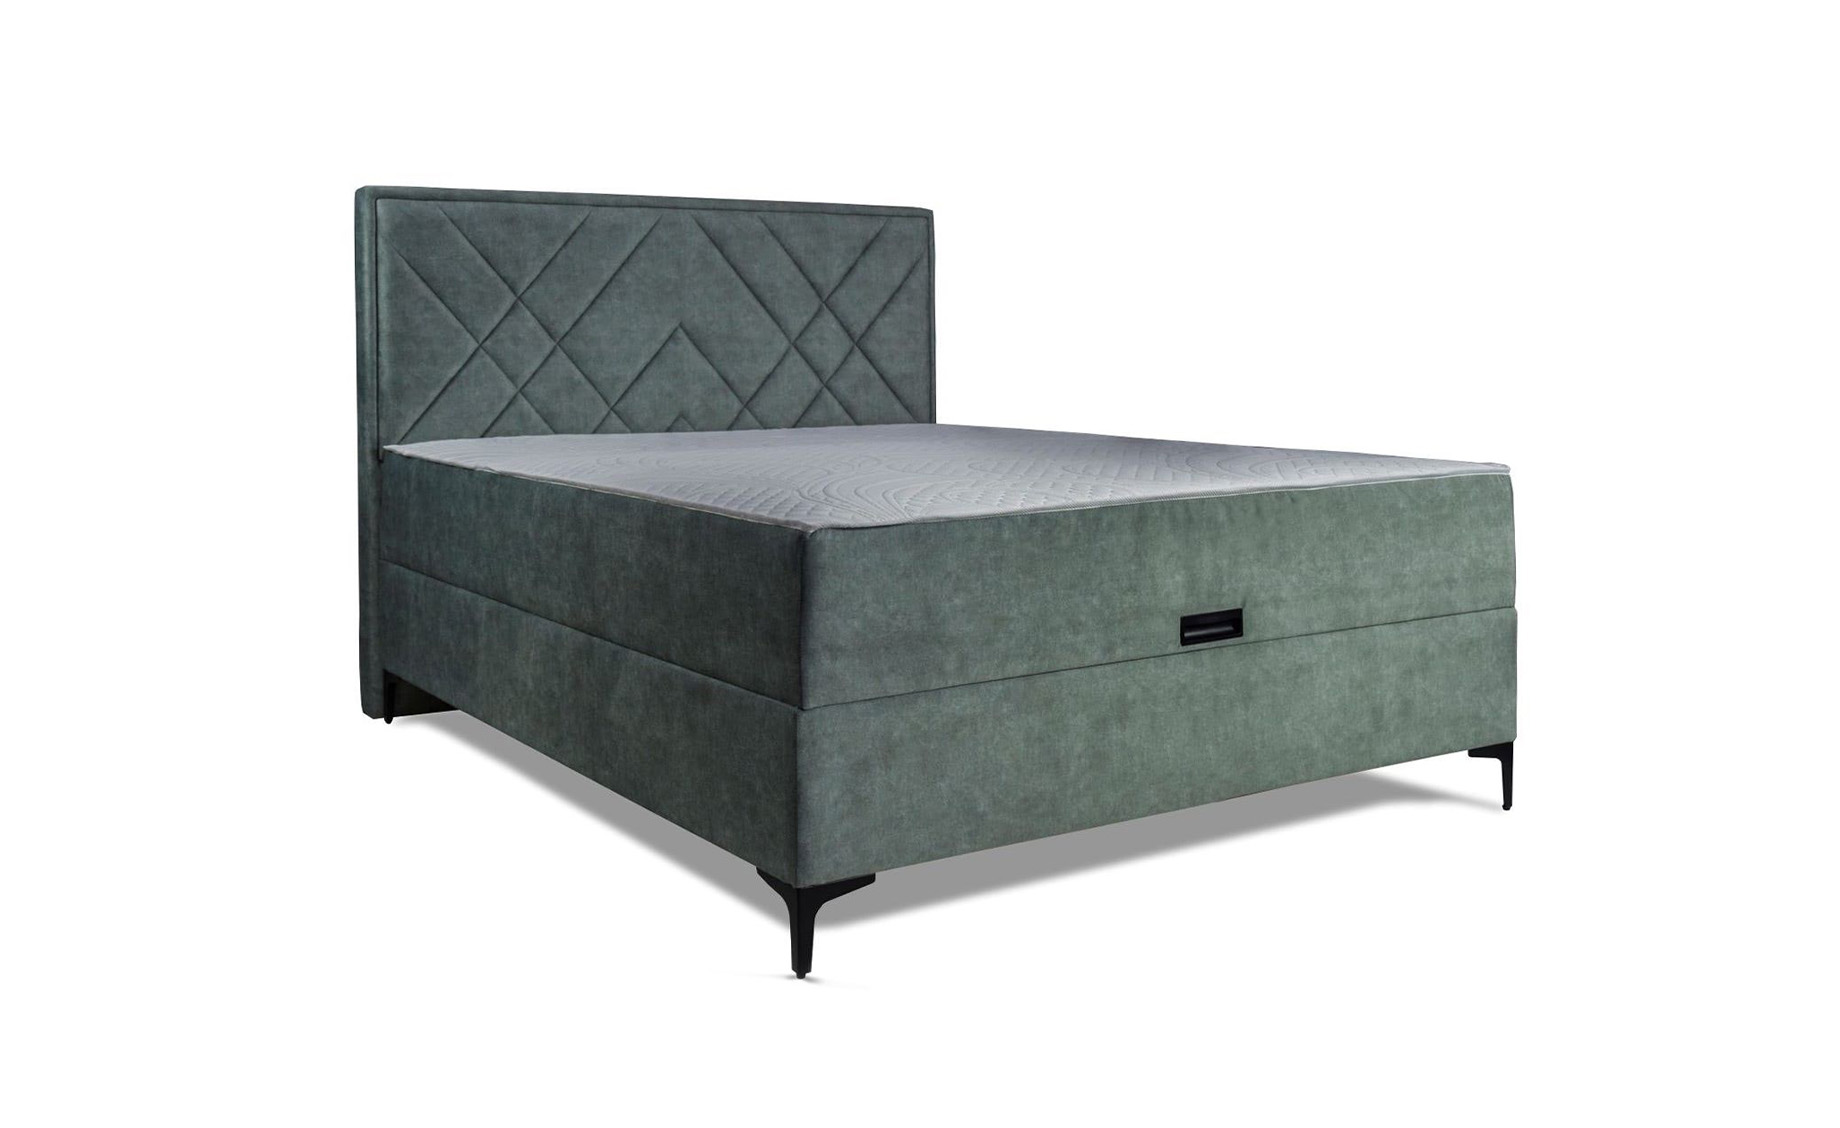 Denver krevet sa prostorom za odlaganje 144,5x209x130 cm